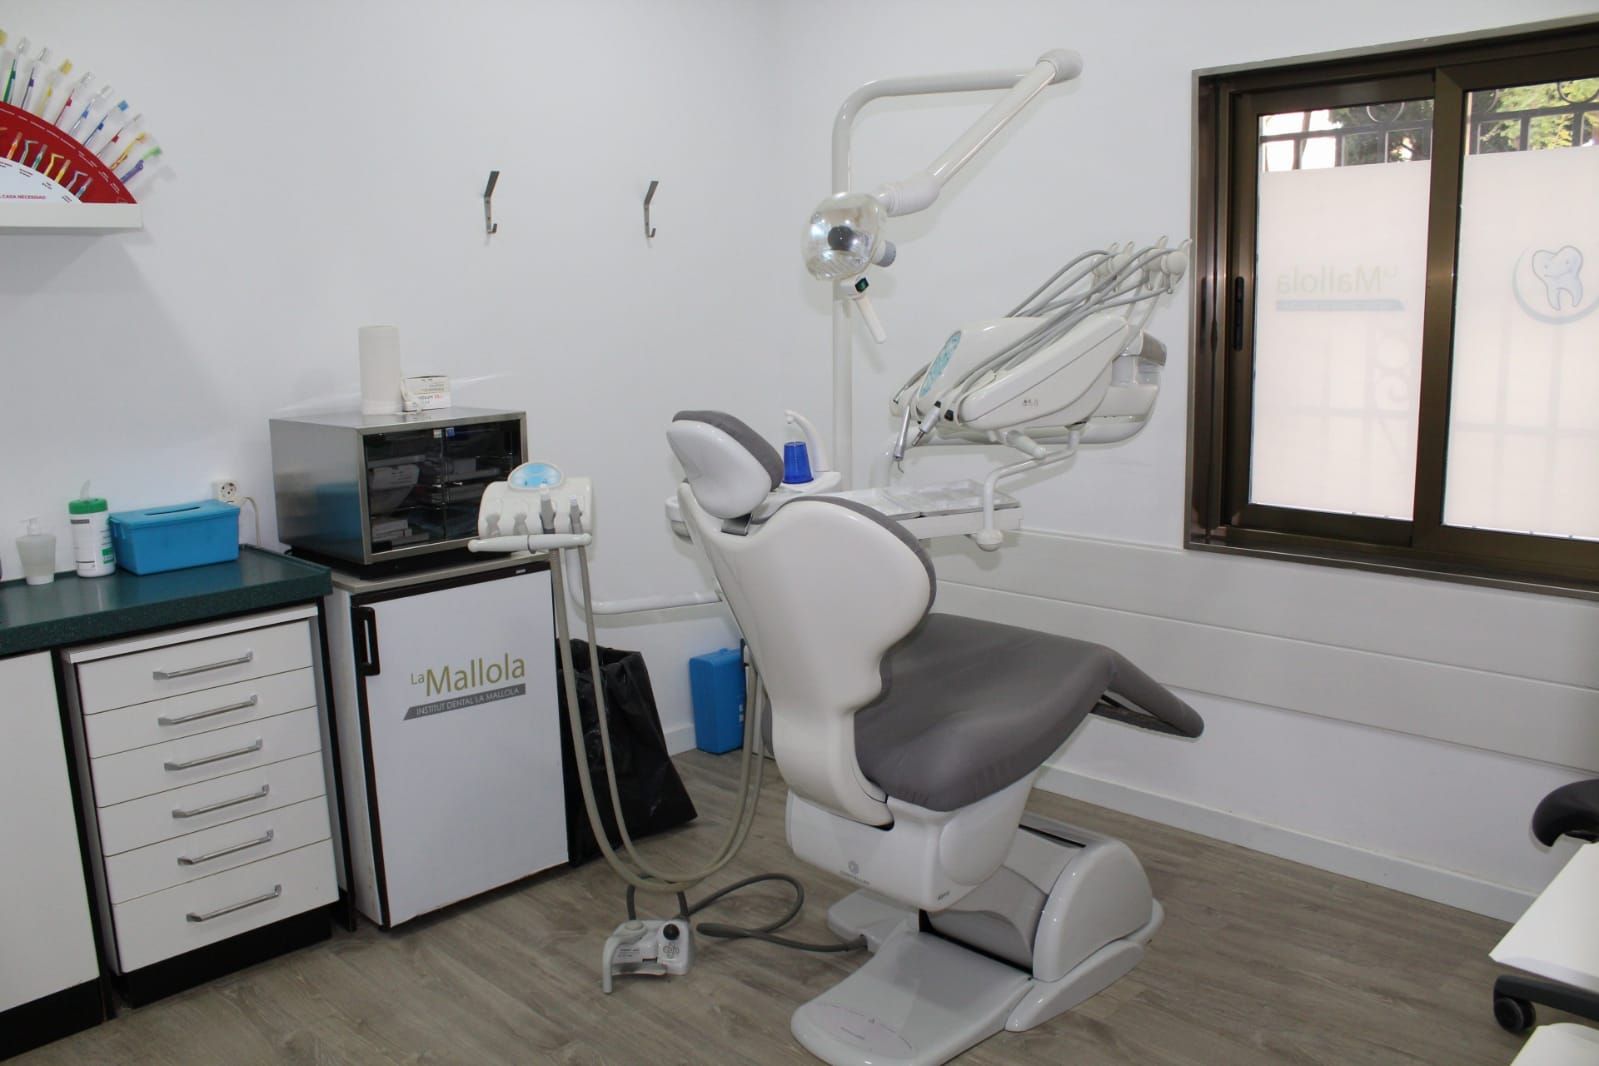 Foto 29 de Especialistas en estética dental en  | Clínica Dental La Mallola